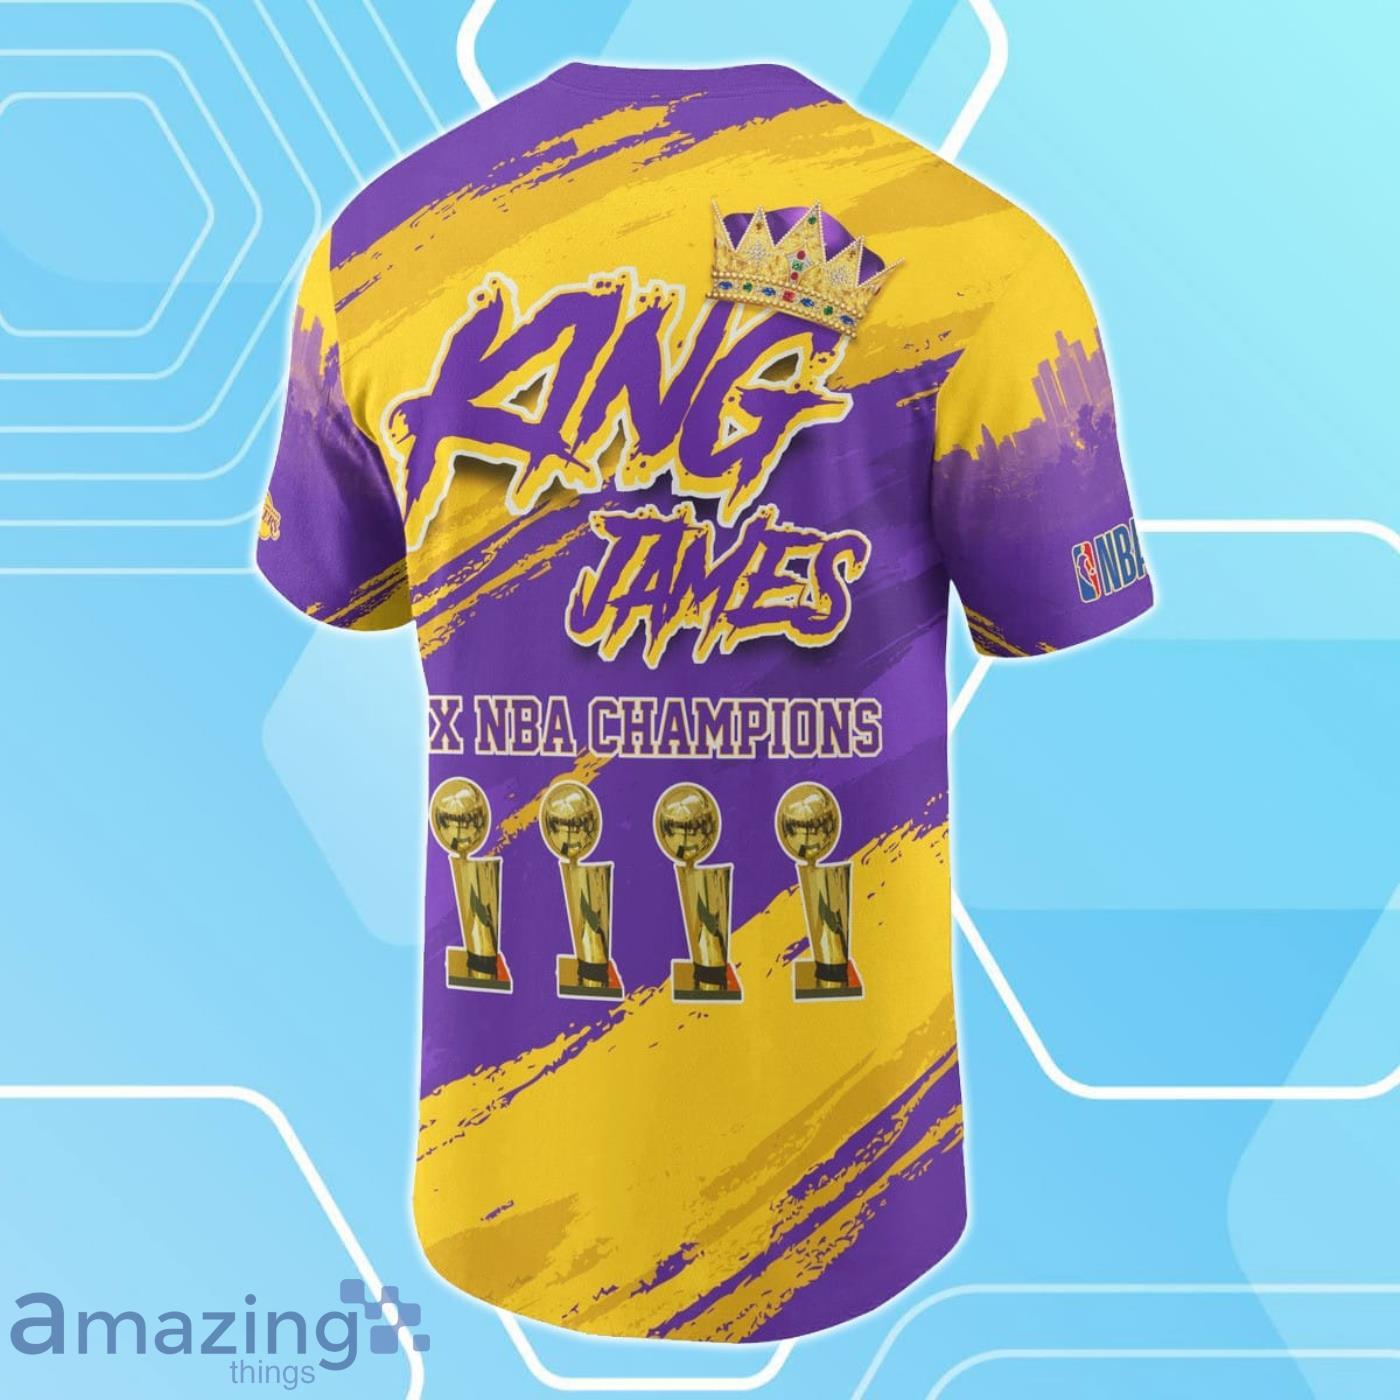 Lebron James legends Lakers T - Shirt – Color Star Prints